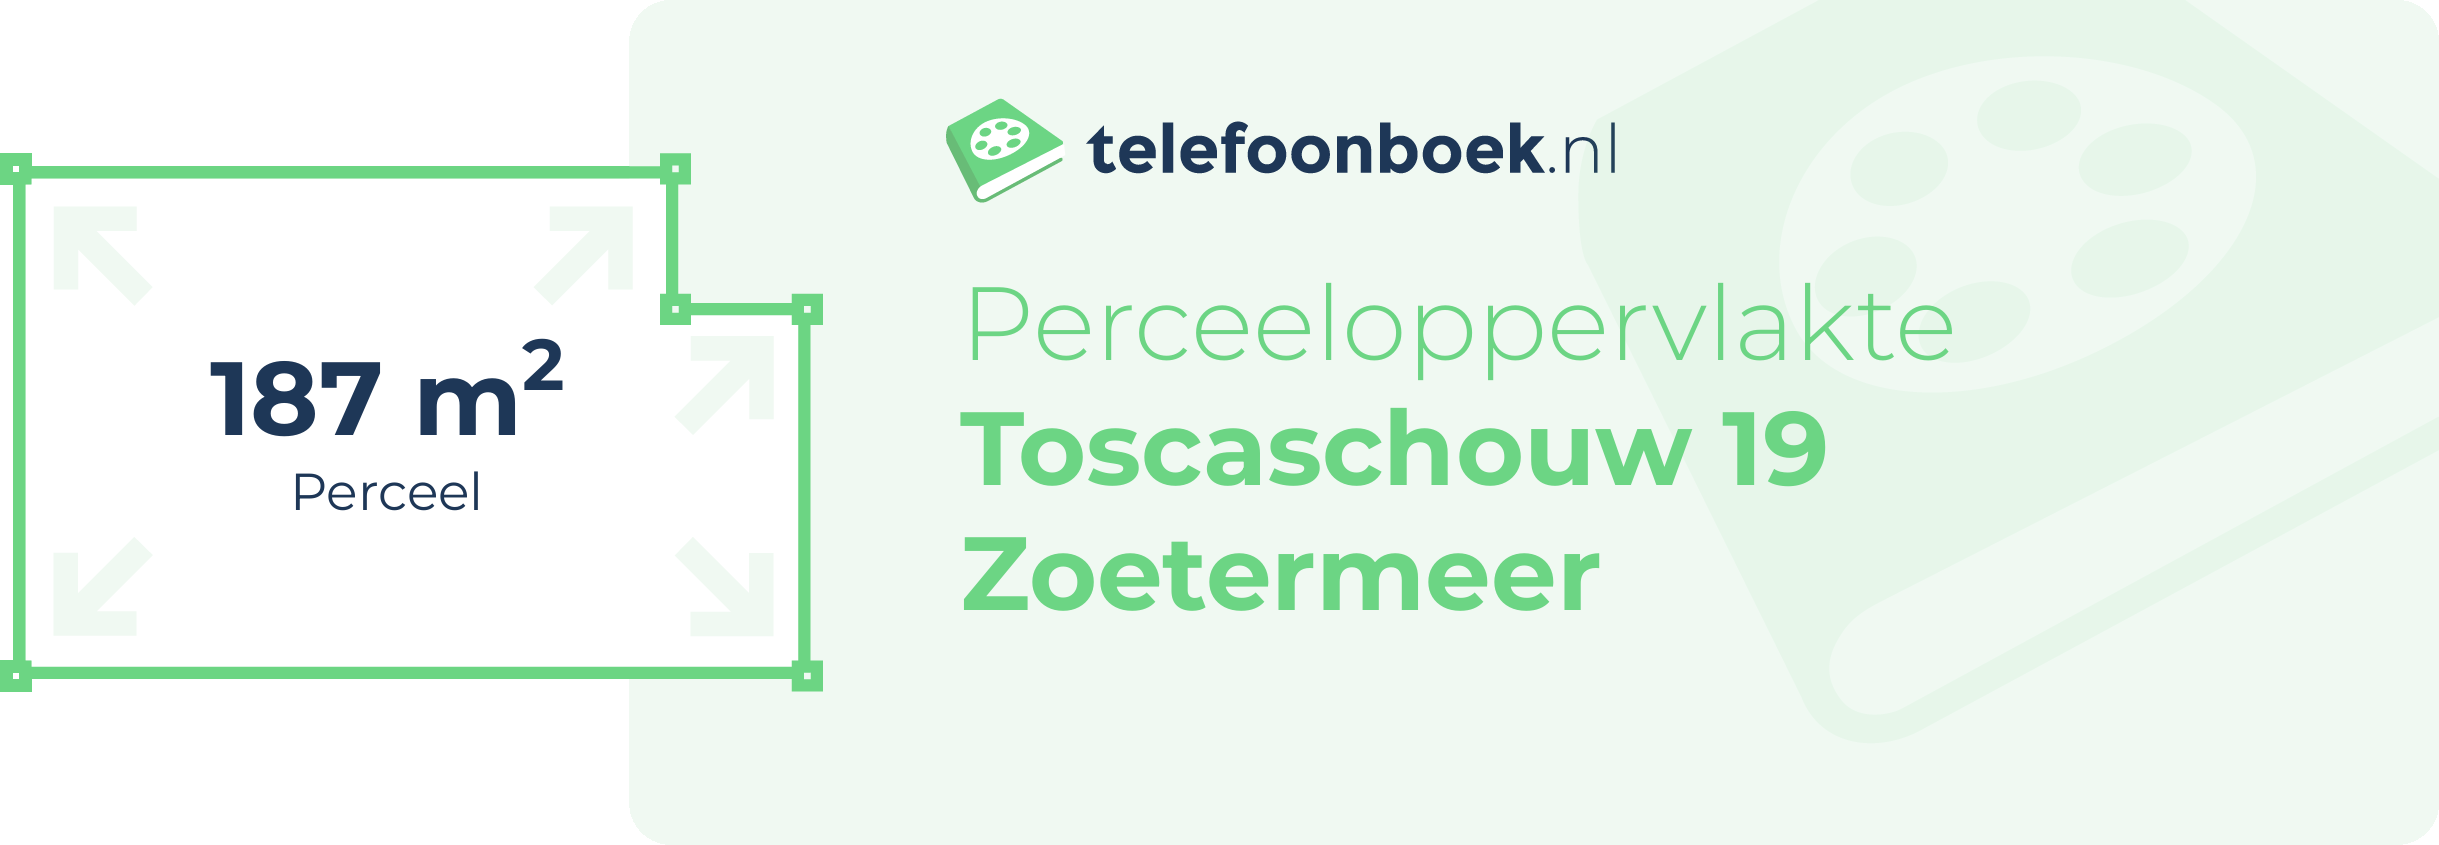 Perceeloppervlakte Toscaschouw 19 Zoetermeer